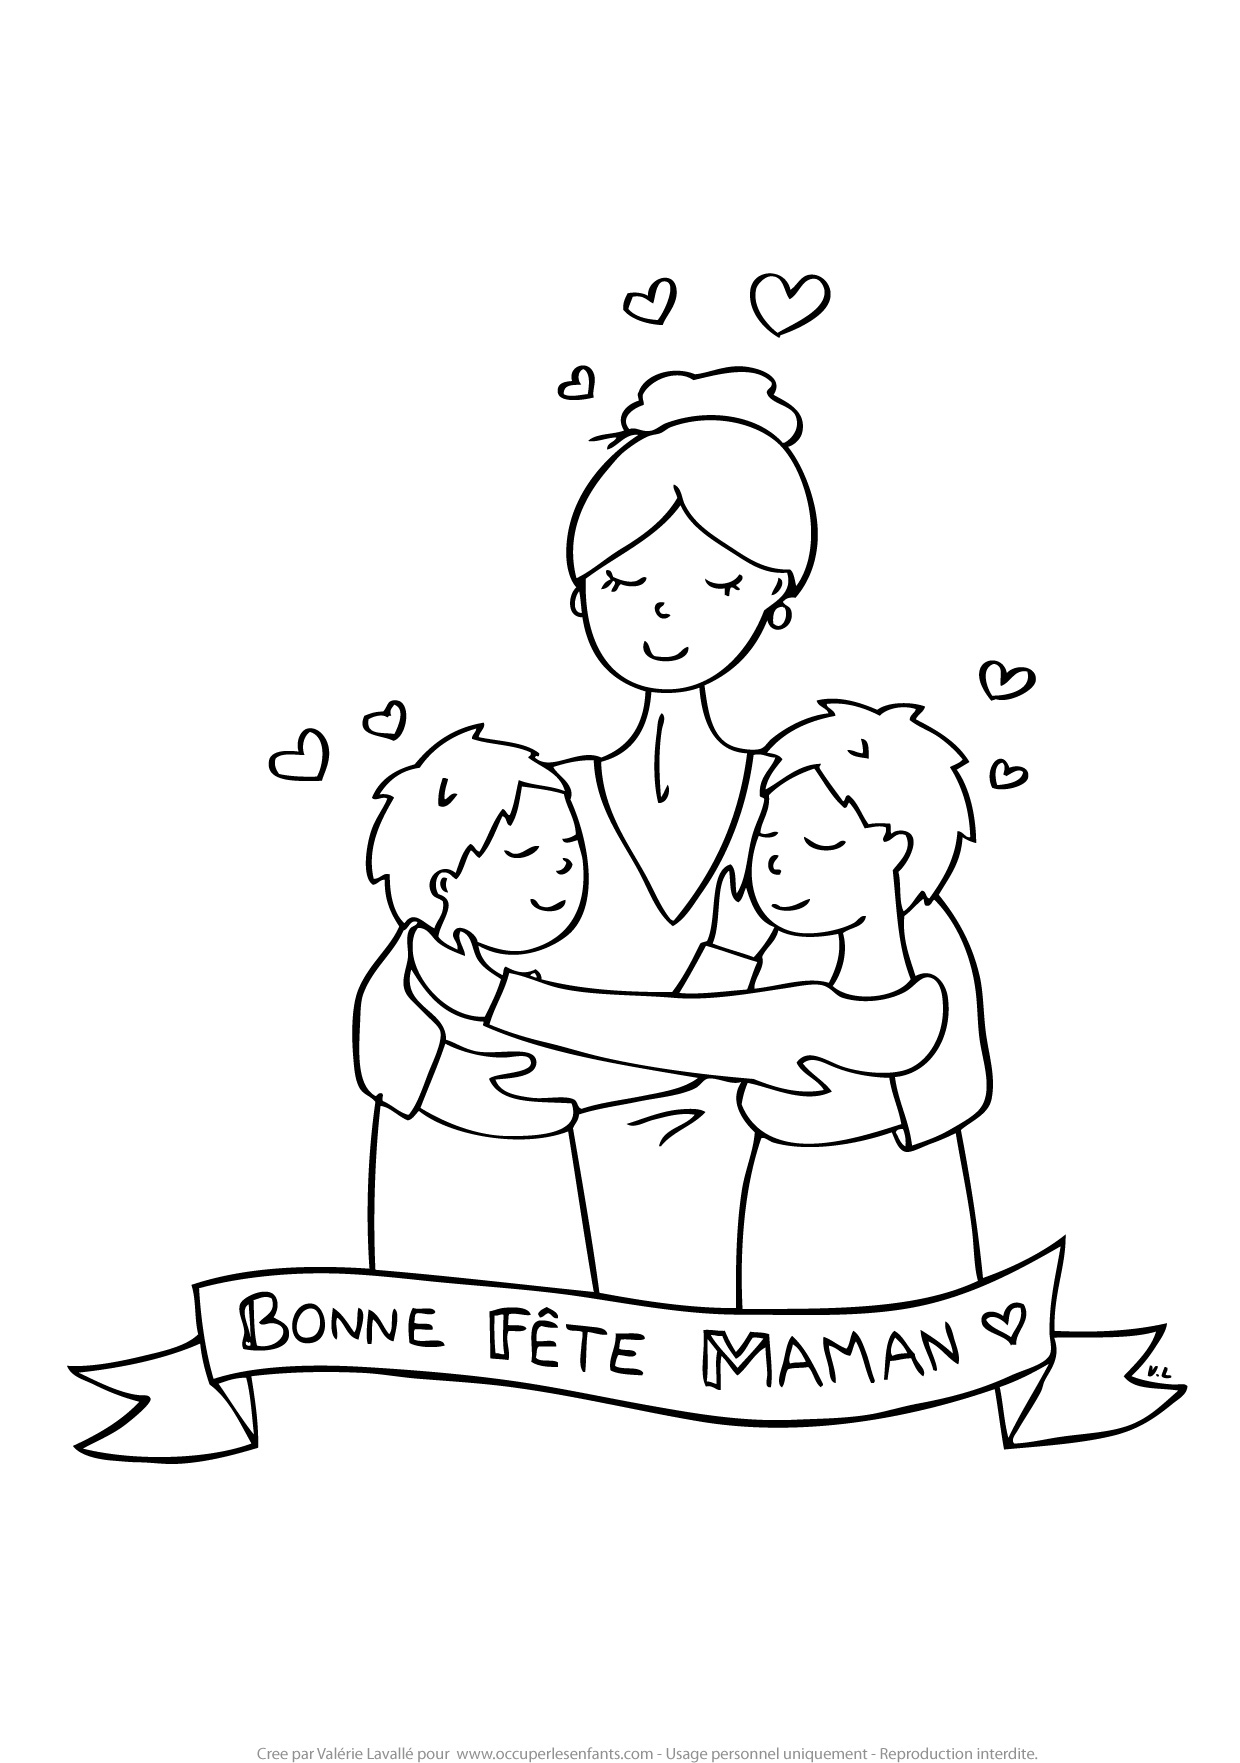 Coloriage Fete Des Meres, Maman De 2 Garçons - Occuper Les Enfants intérieur Bonne Fete Maman Coloriage